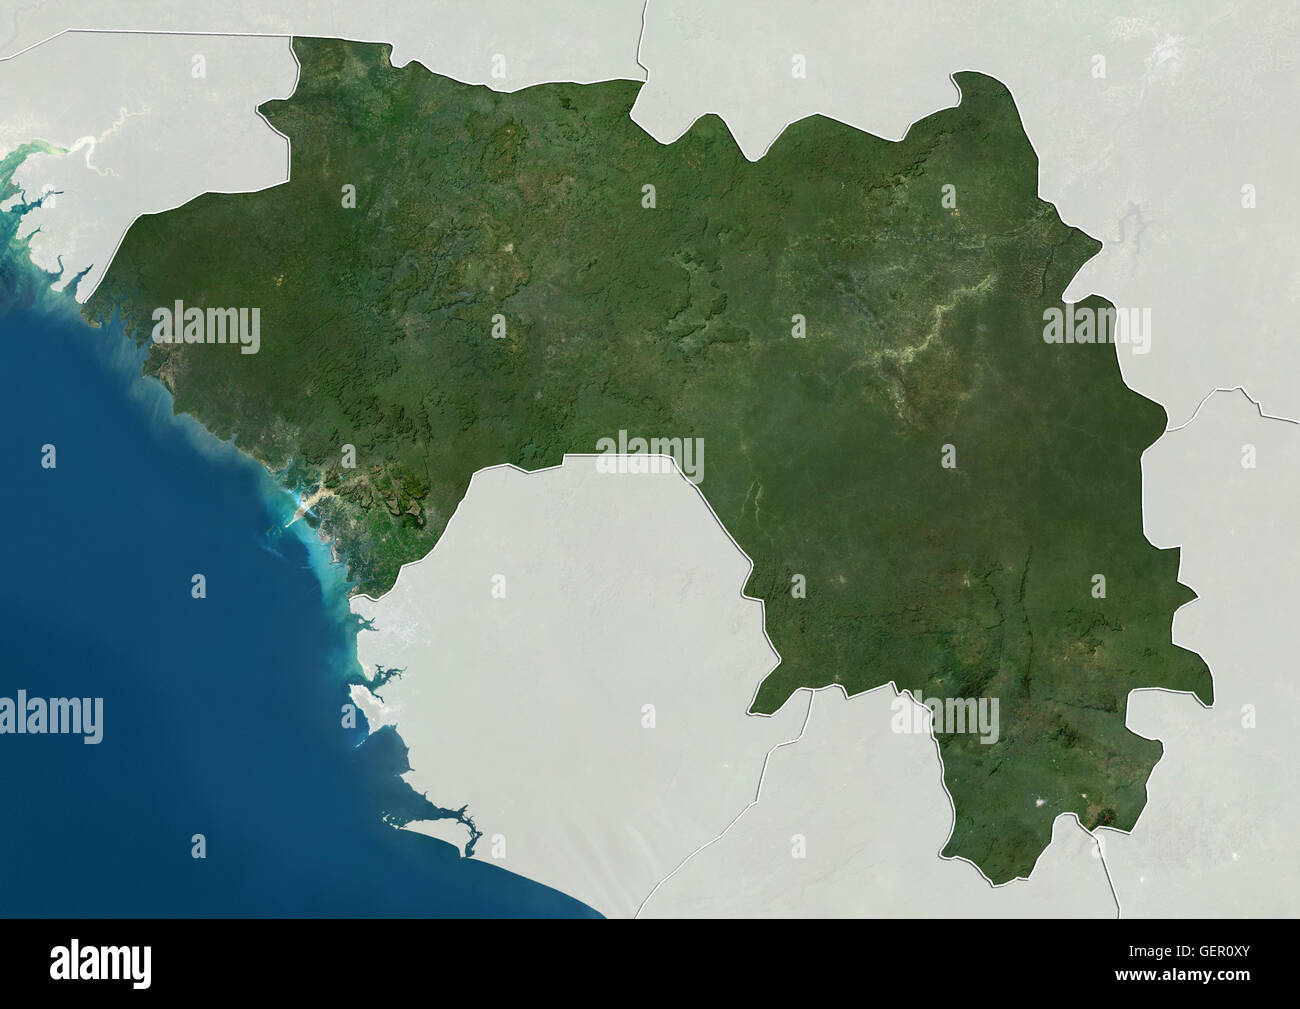 Satellitenansicht von Guinea (mit Ländergrenzen und Maske). Dieses Bild wurde aus Daten von Landsat-Satelliten erworben erstellt. Stockfoto